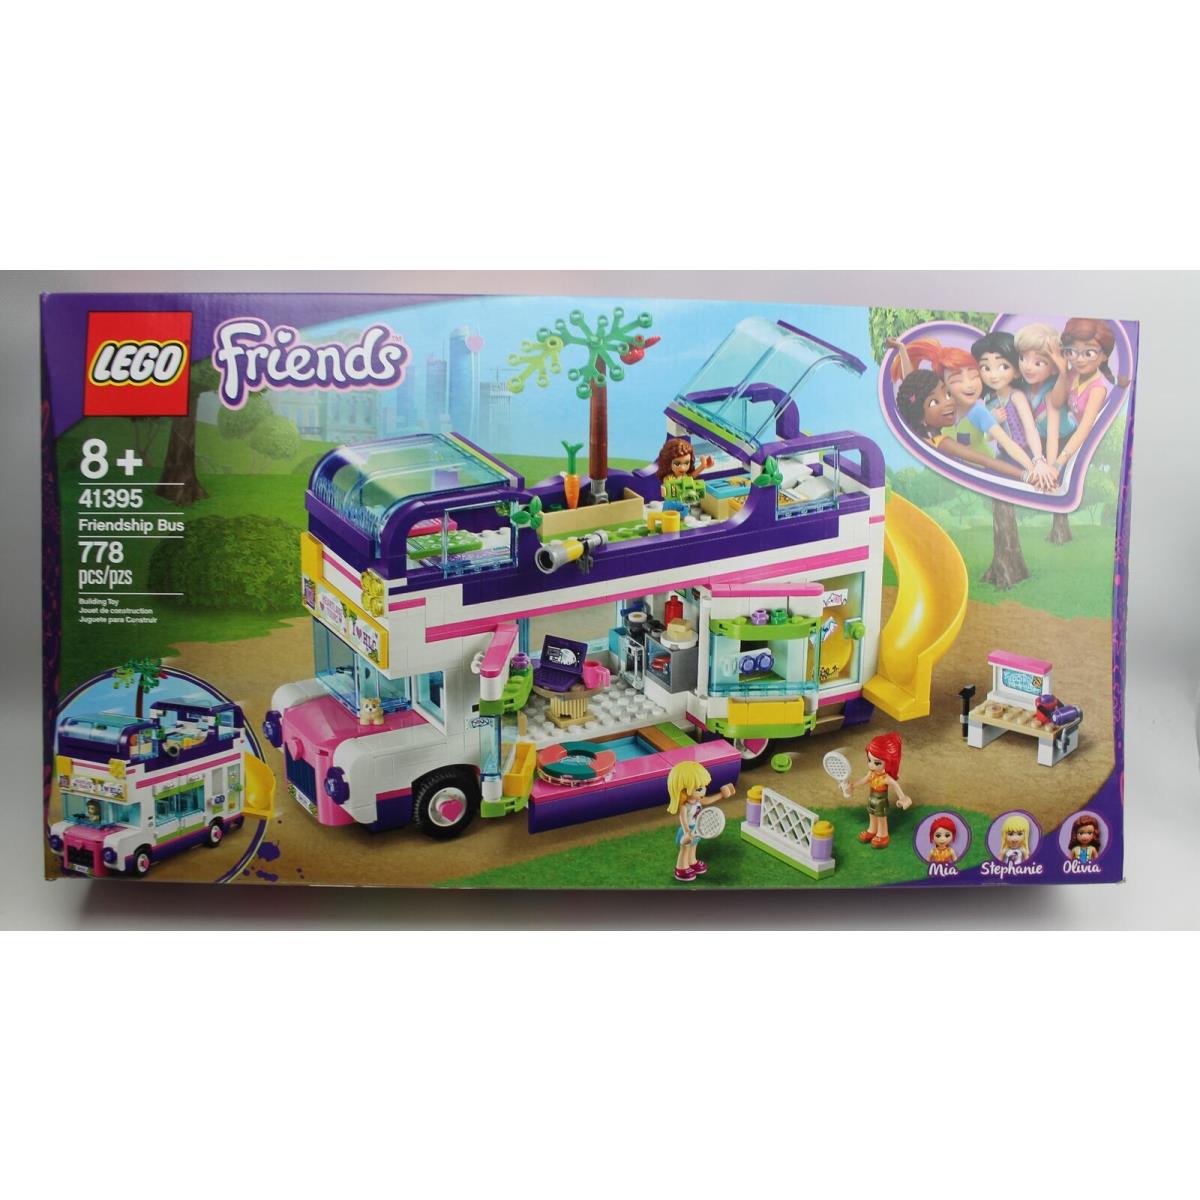 Lego Friends Friendship Bus Set 41395